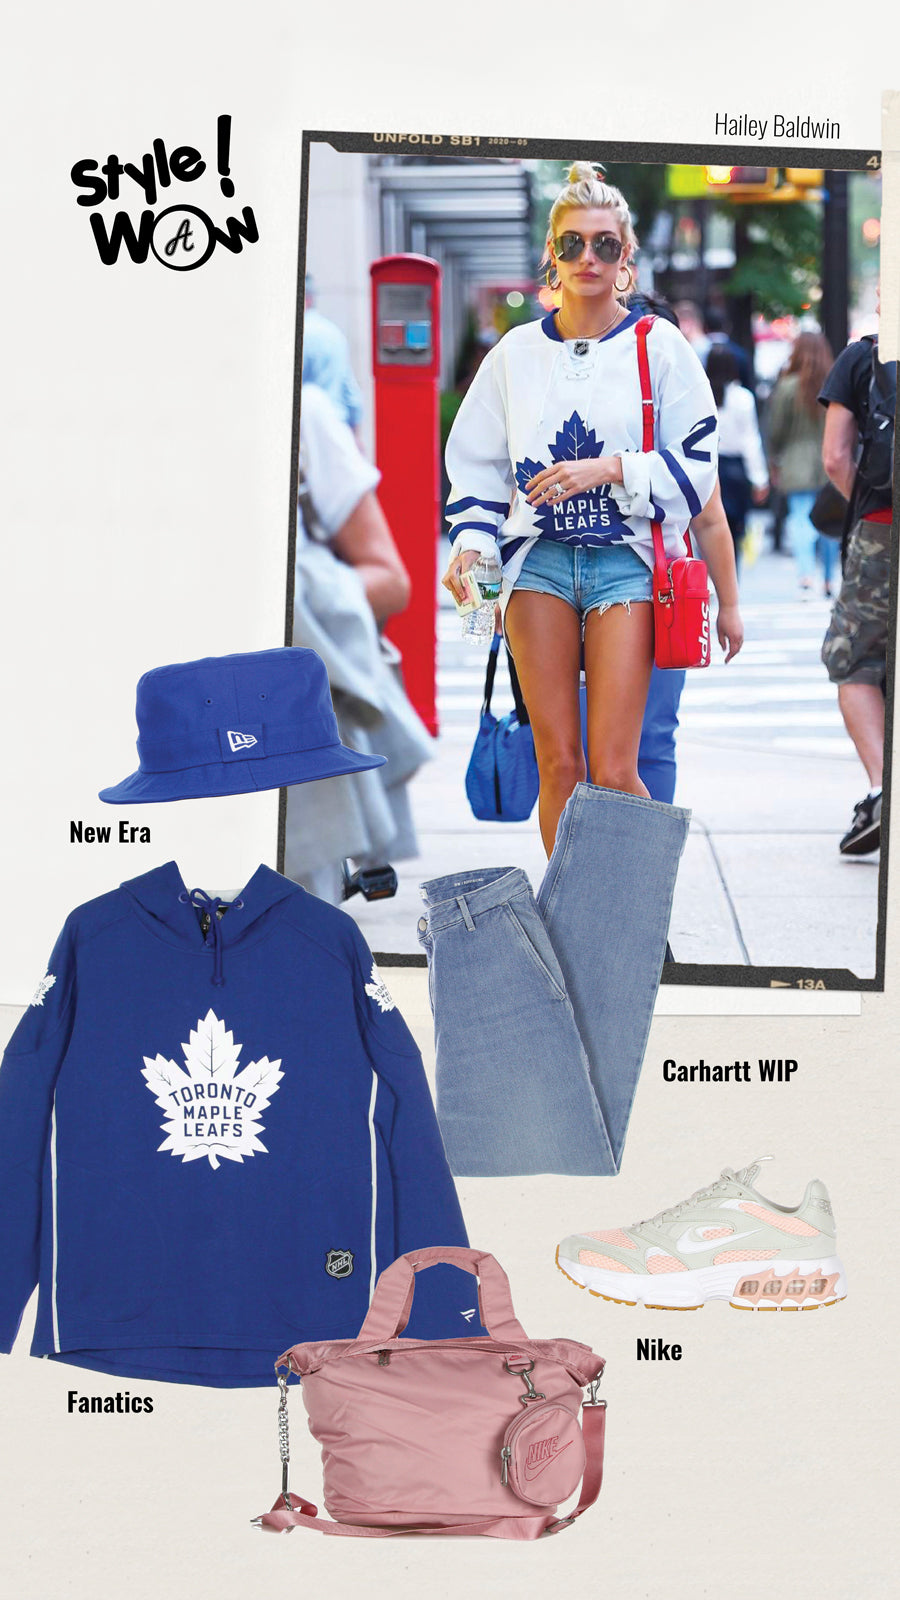 Outfit street inspirato allo stile di Hailey Bieber che indossa casacca da gioco NHL, composto da felpa con cappuccio blu della squadra di hockey Toronto Maple Leafs, blu jeans lunghi chiari, cappello da pescatore piatto blu New Era e sneakers da running Nike Air Fire grigie metallizzate e rosa